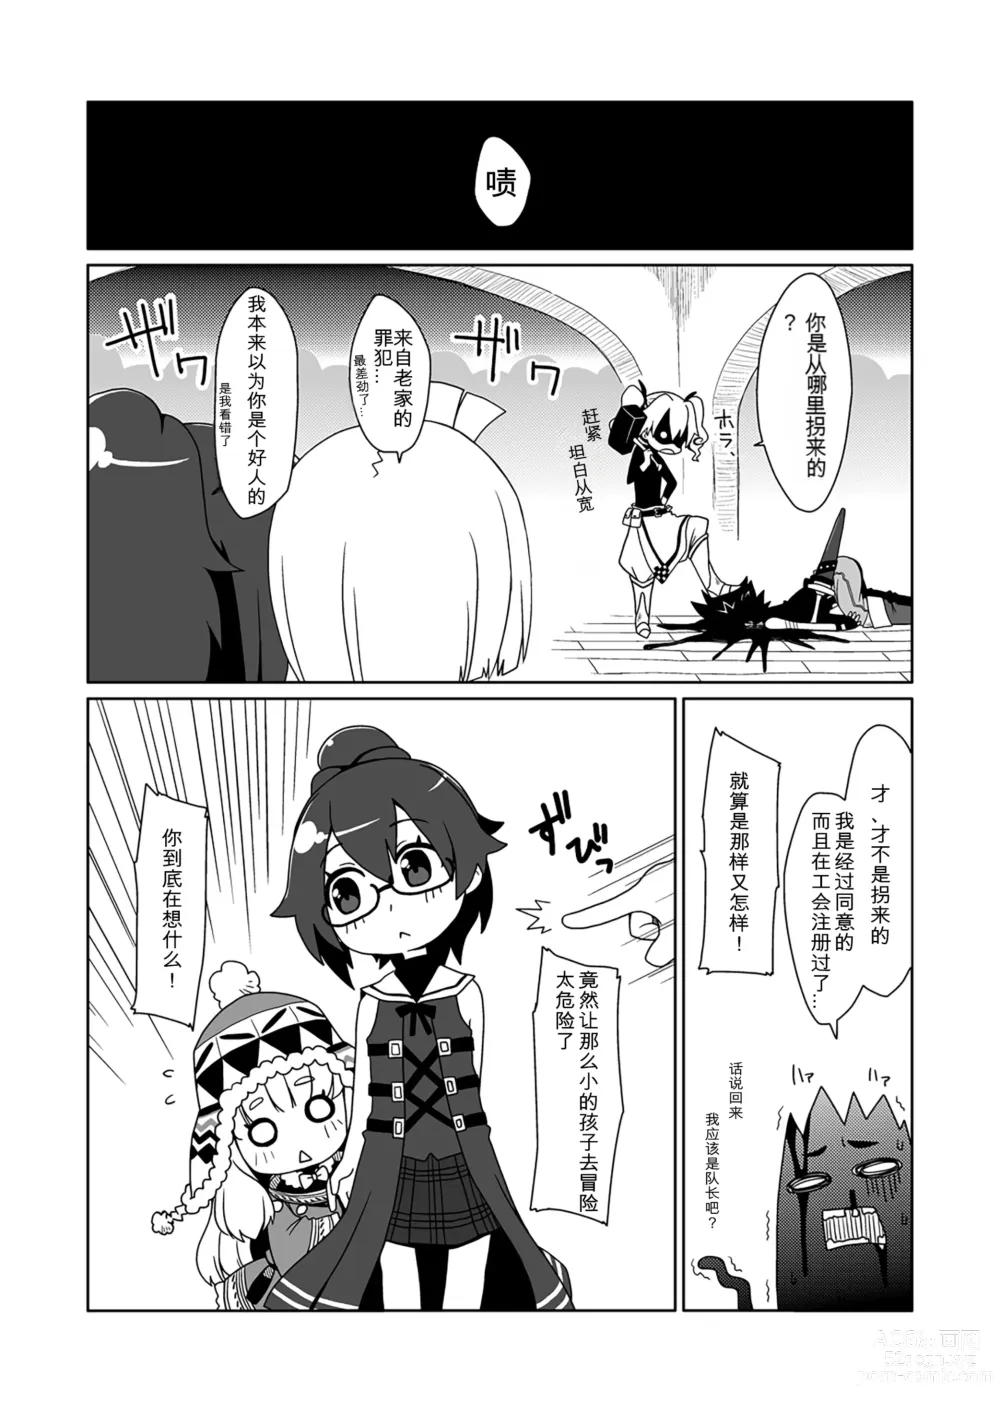 Page 5 of doujinshi Runemaster wa Dekiru Ko.